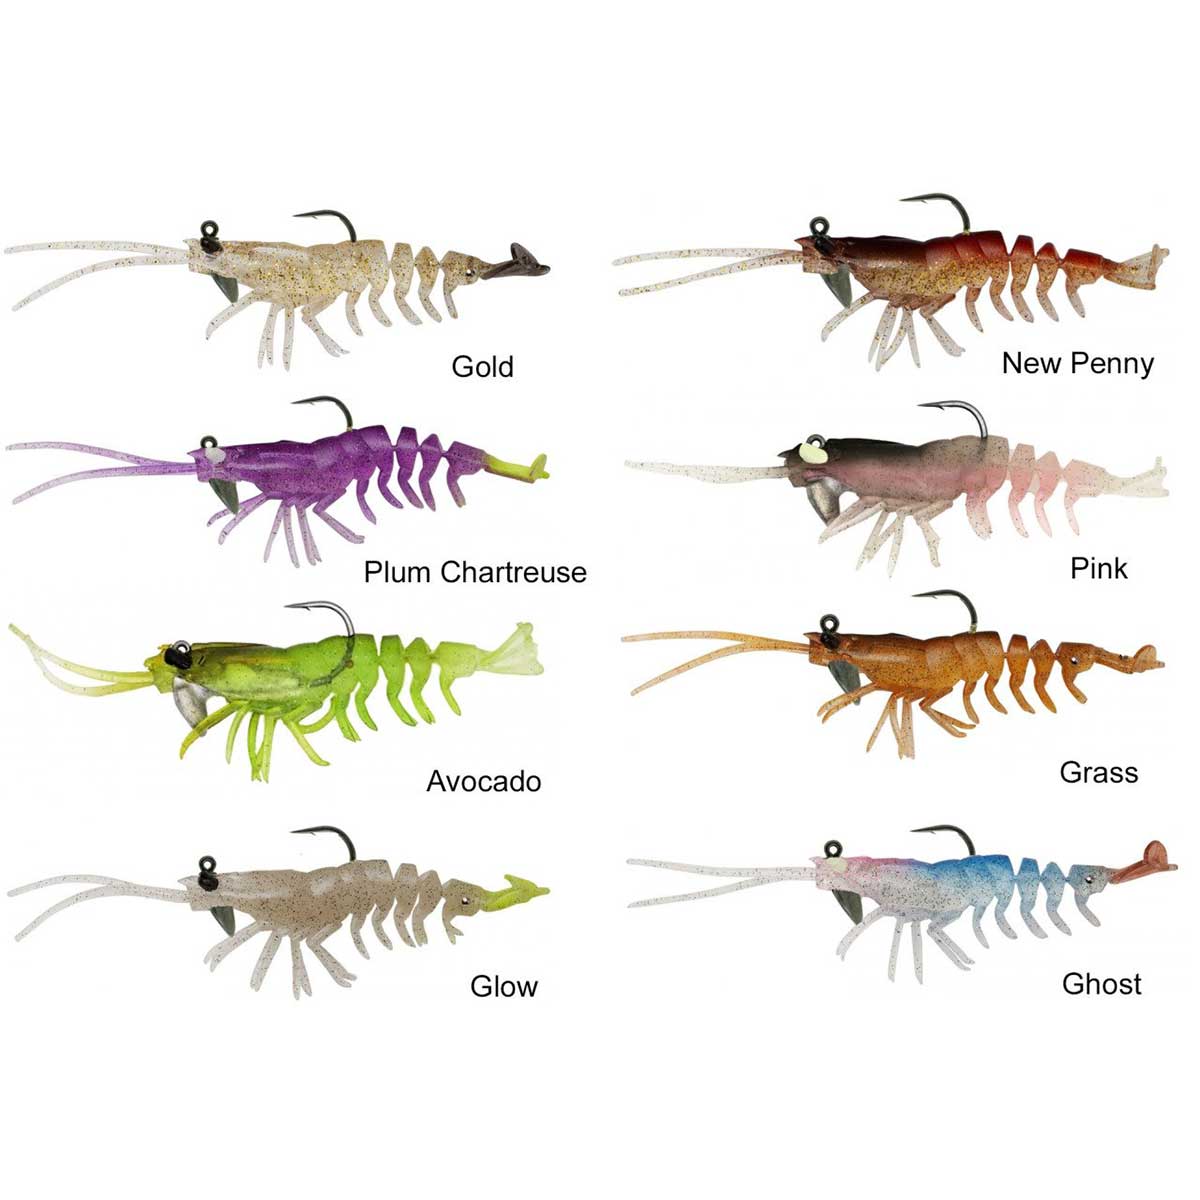 Gerçekçi vücut detayları, renkleri ve aksiyonuyla 3D RTF Shrimp, cezbedici aksiyona sahiptir